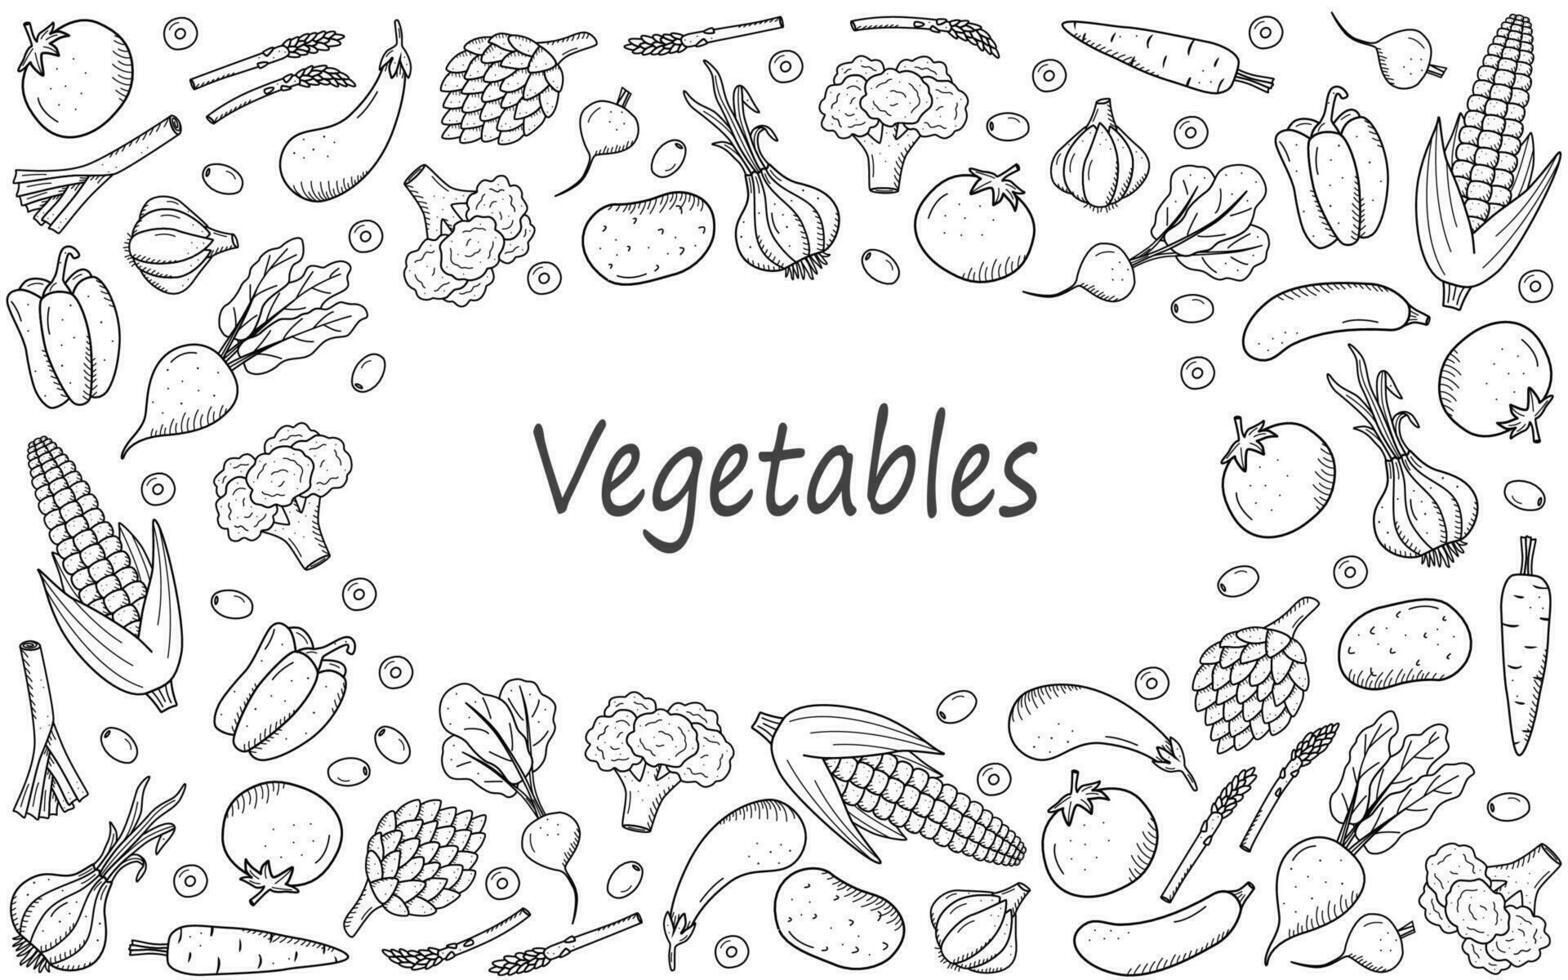 verzameling van tekening groenten in tekening stijl. een reeks van vector illustraties van de oogst maïs aardappelen wortels radijs bieten knoflook uien tomaten, enz.